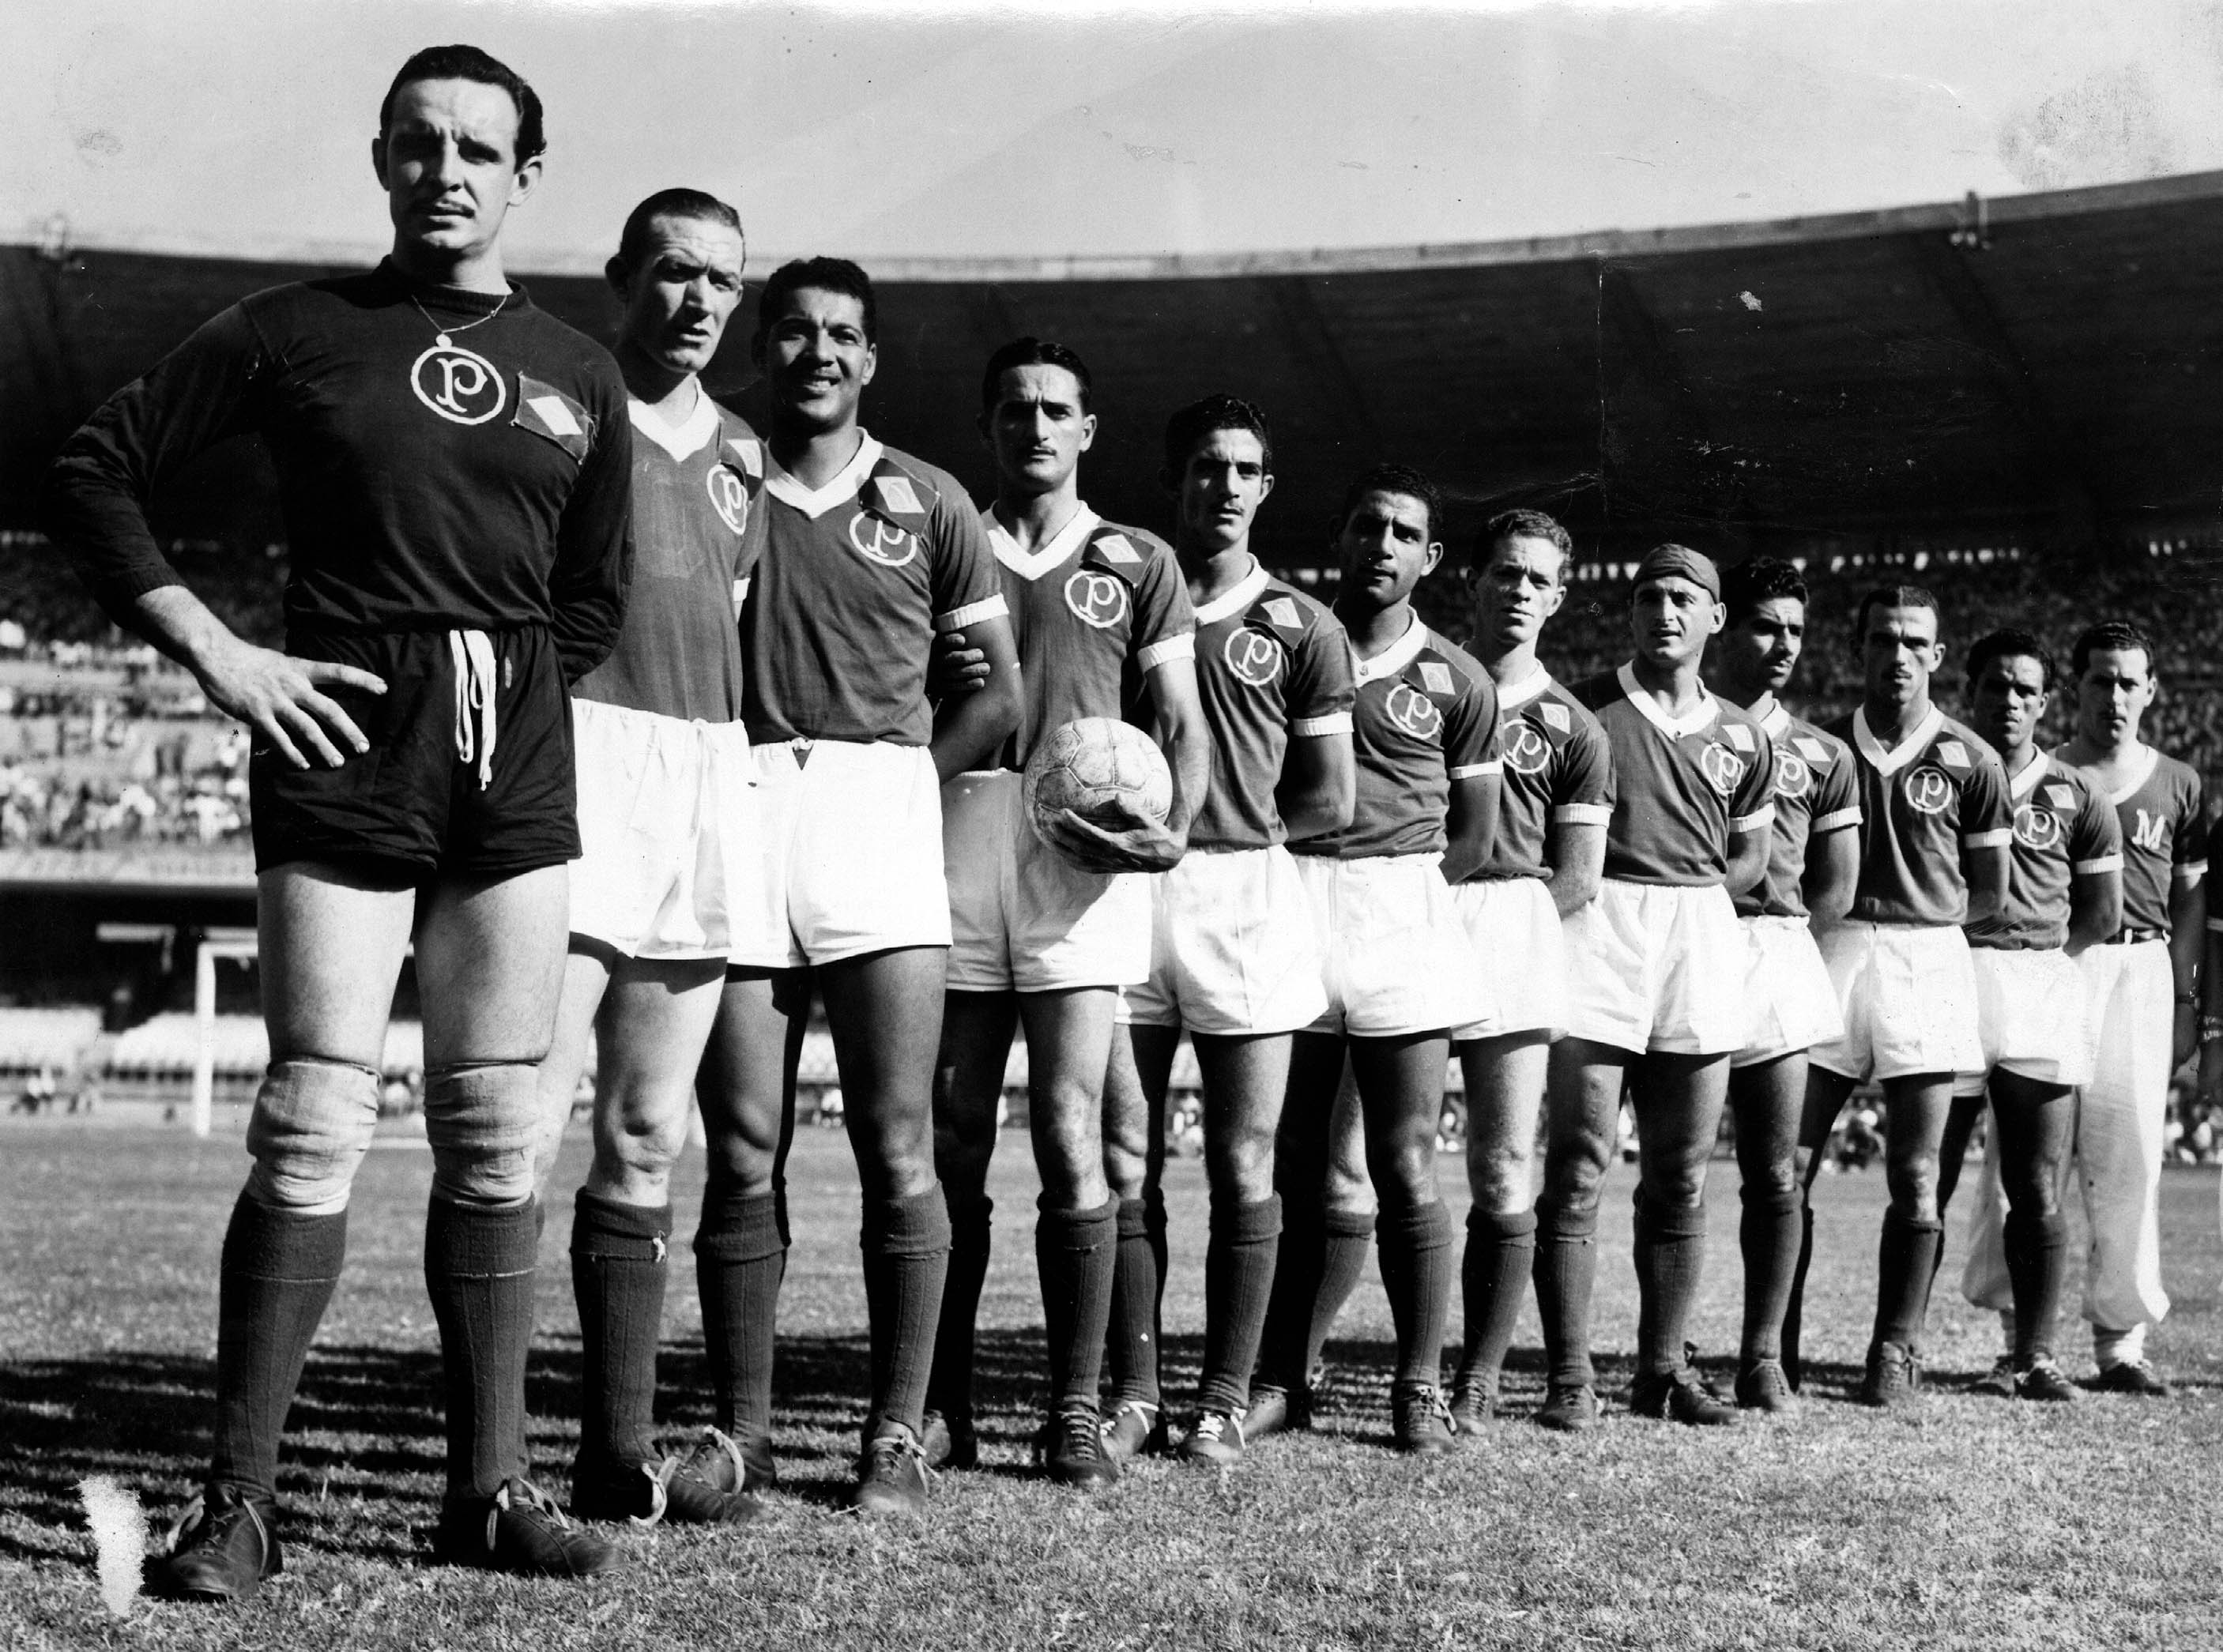 Salve Palestrinos #22 - Campeonato Mundial Interclubes 1951 